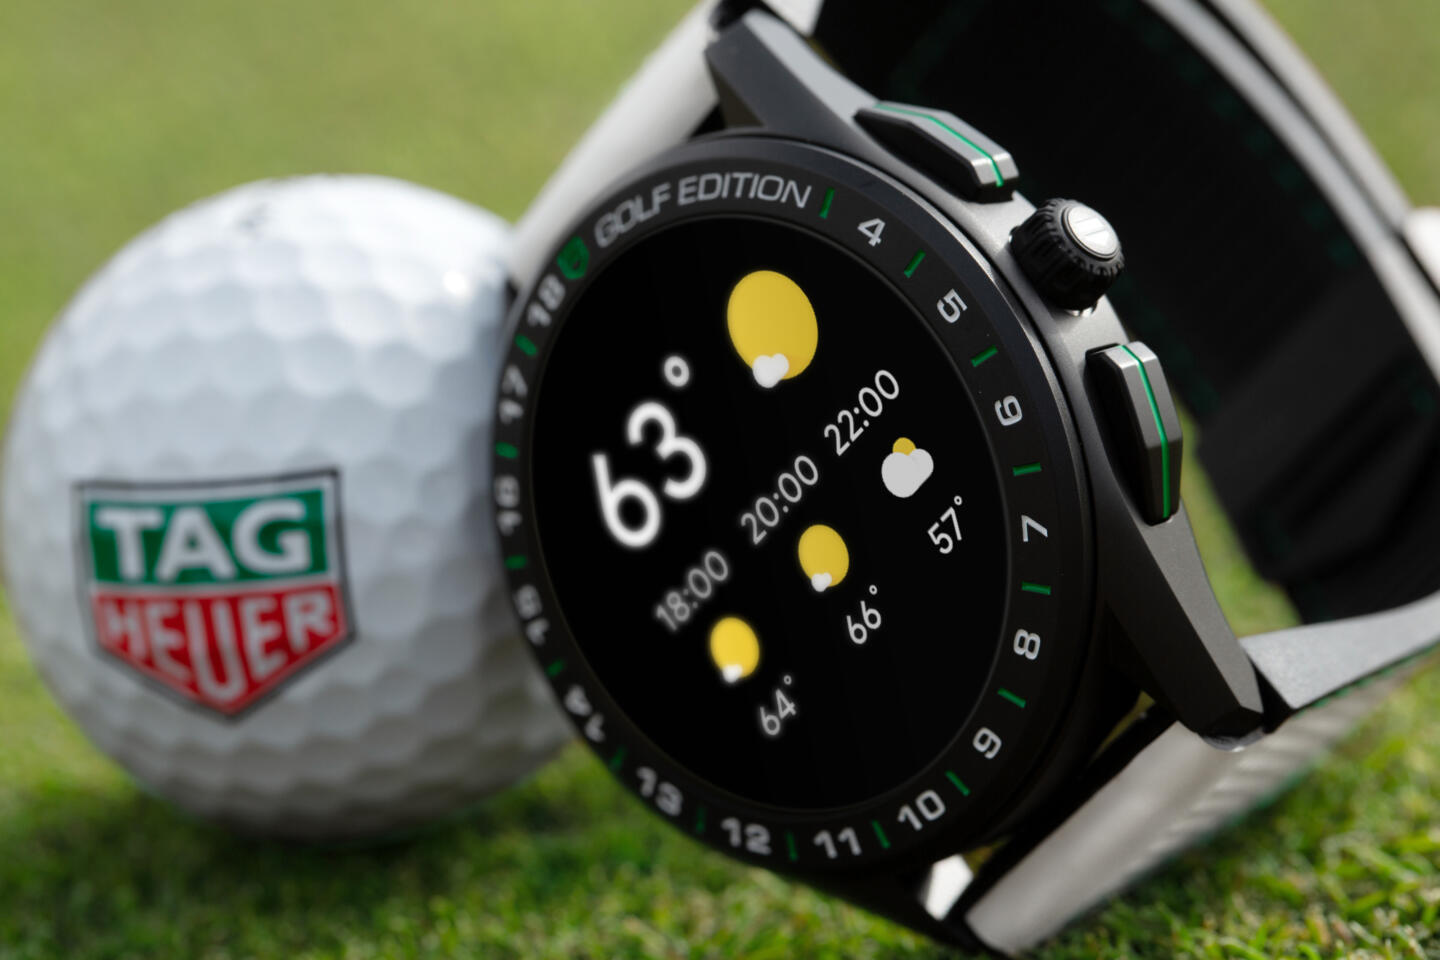 Бренд TAG Heuer представил смарт-часы для гольфистов. Изображение номер 1